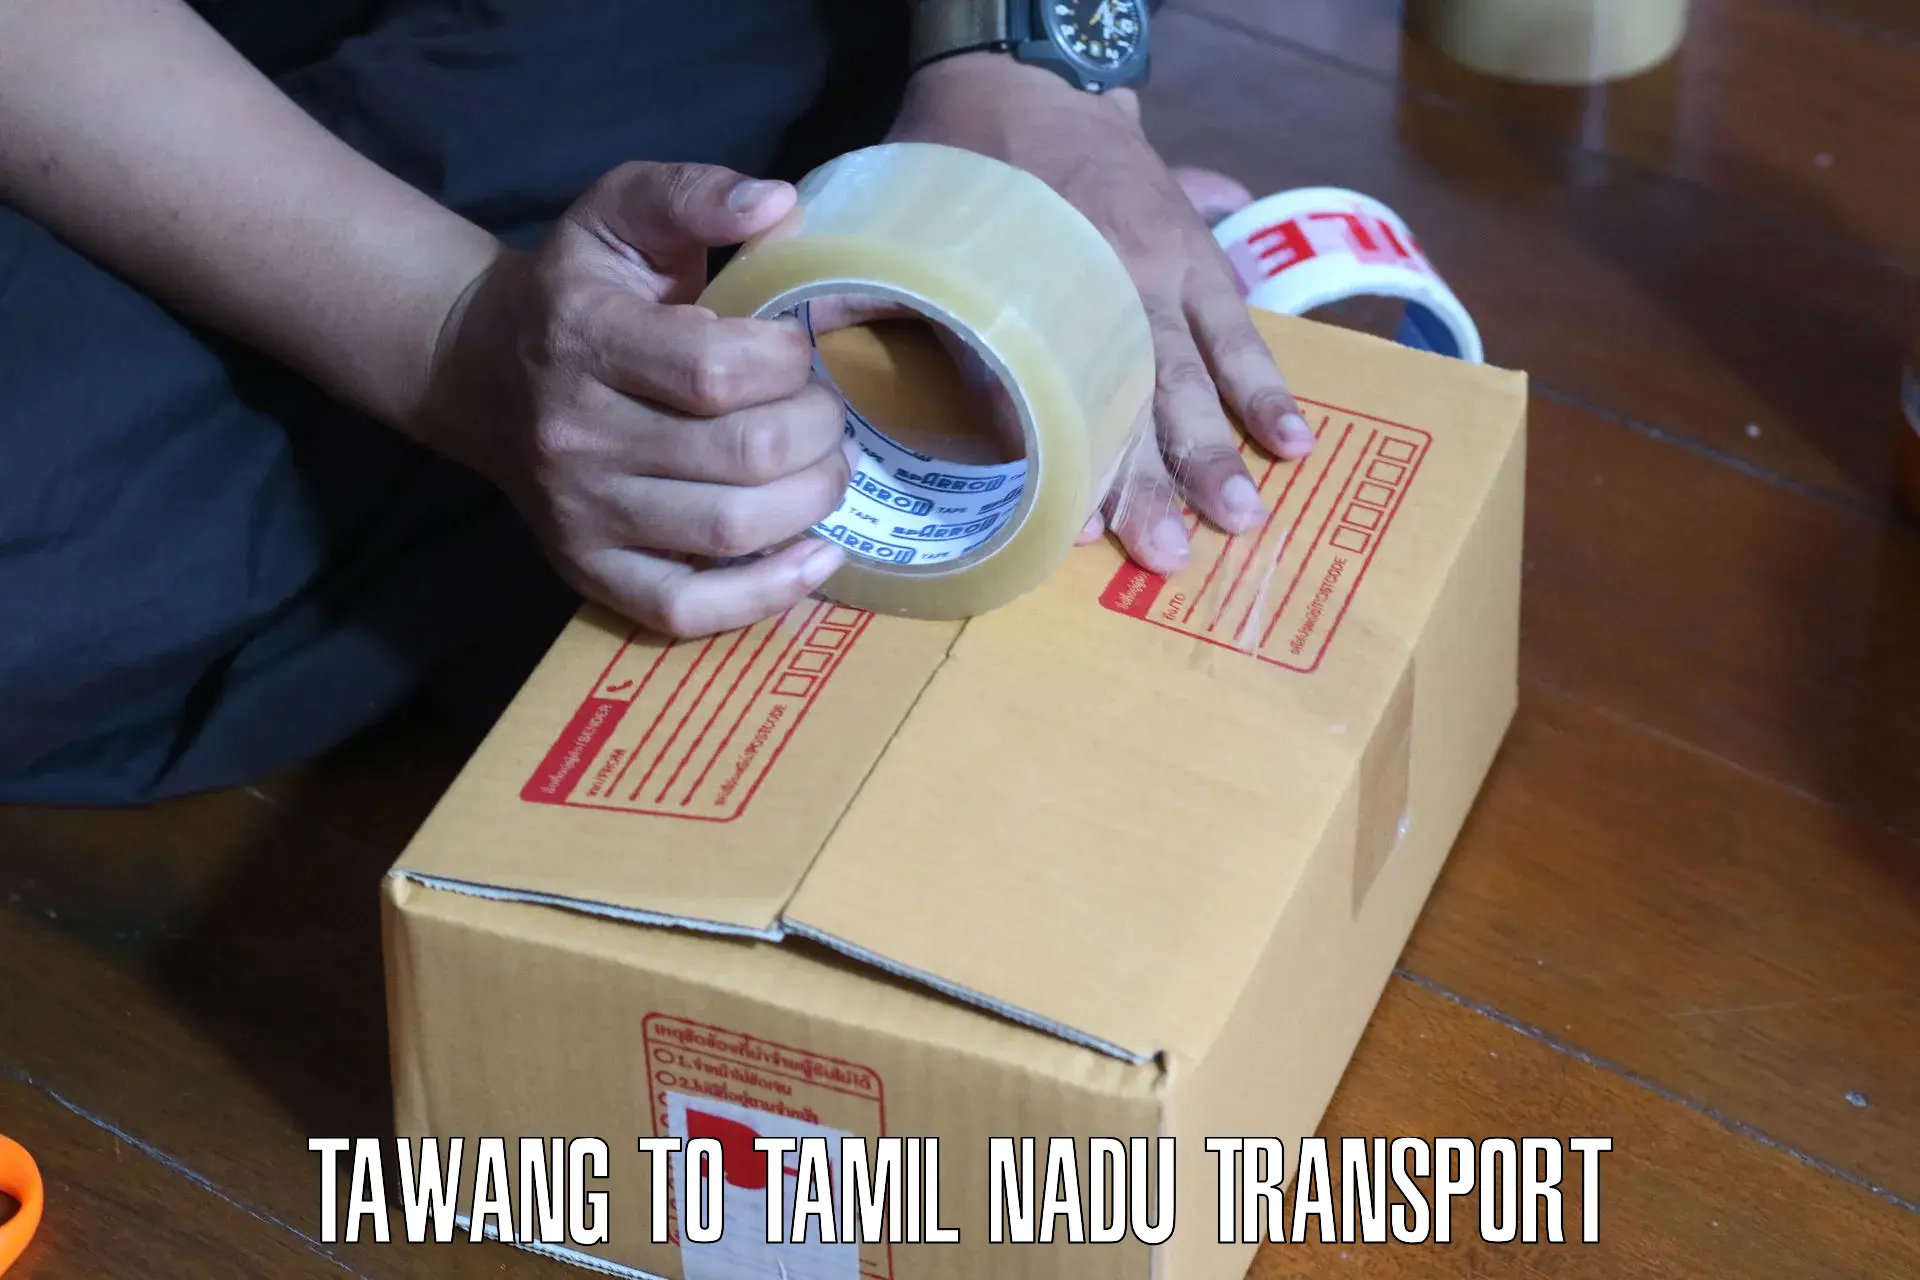 Cycle transportation service Tawang to Omalur